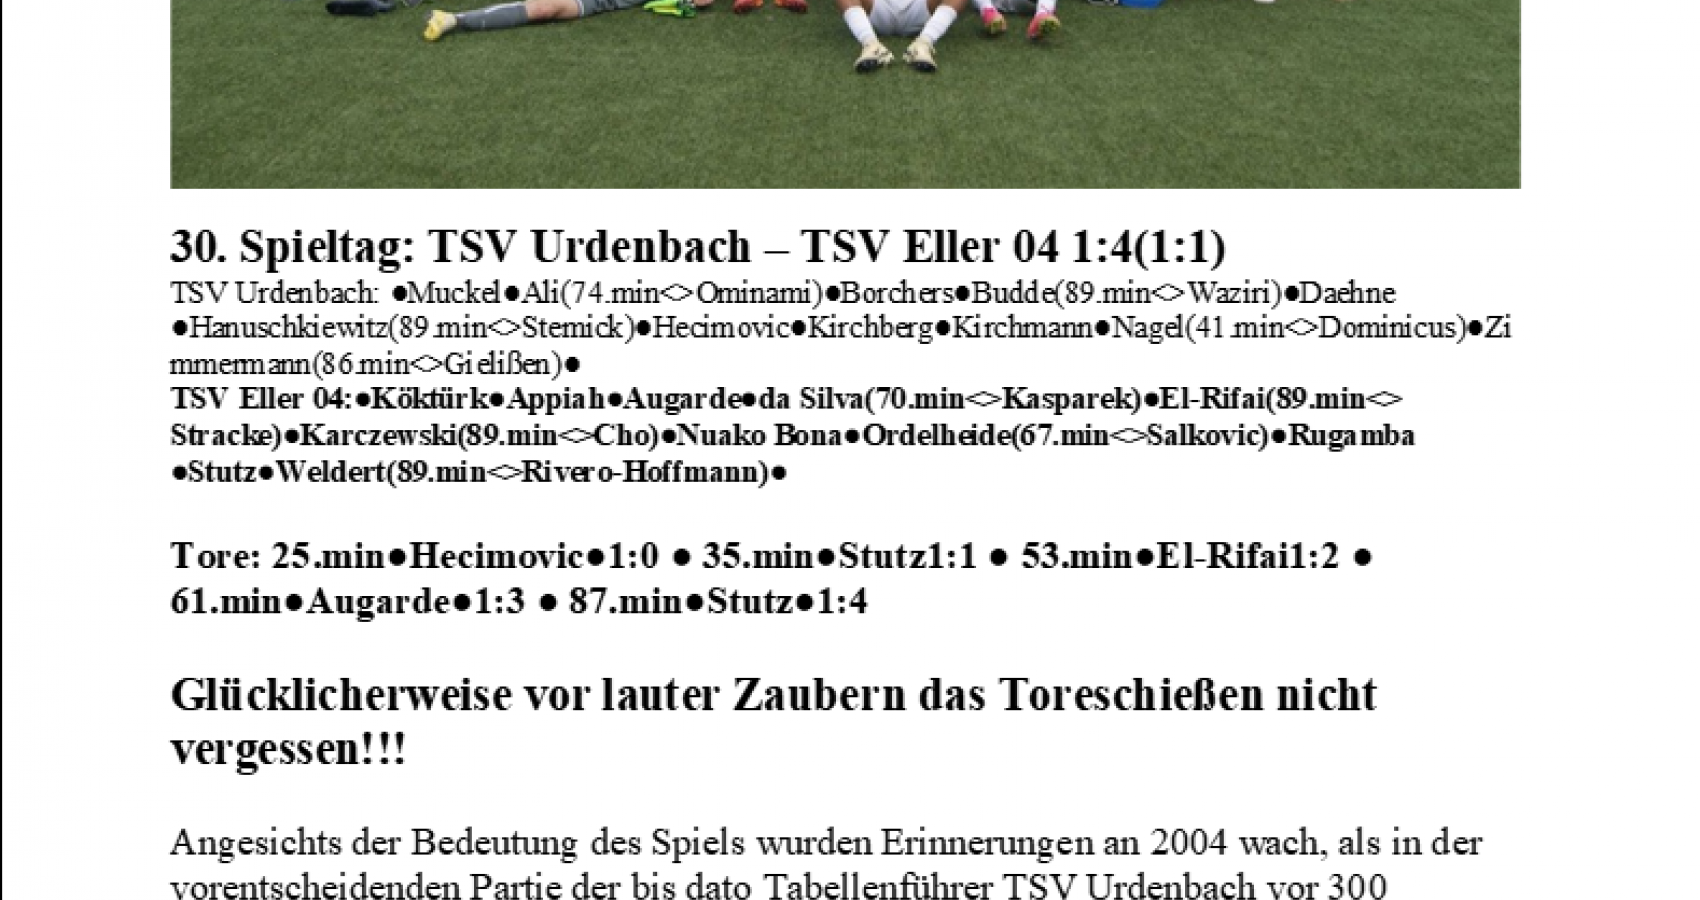 30.Spieltag: TSV Urdenbach - TSV Eller 04 1:4(1:1)